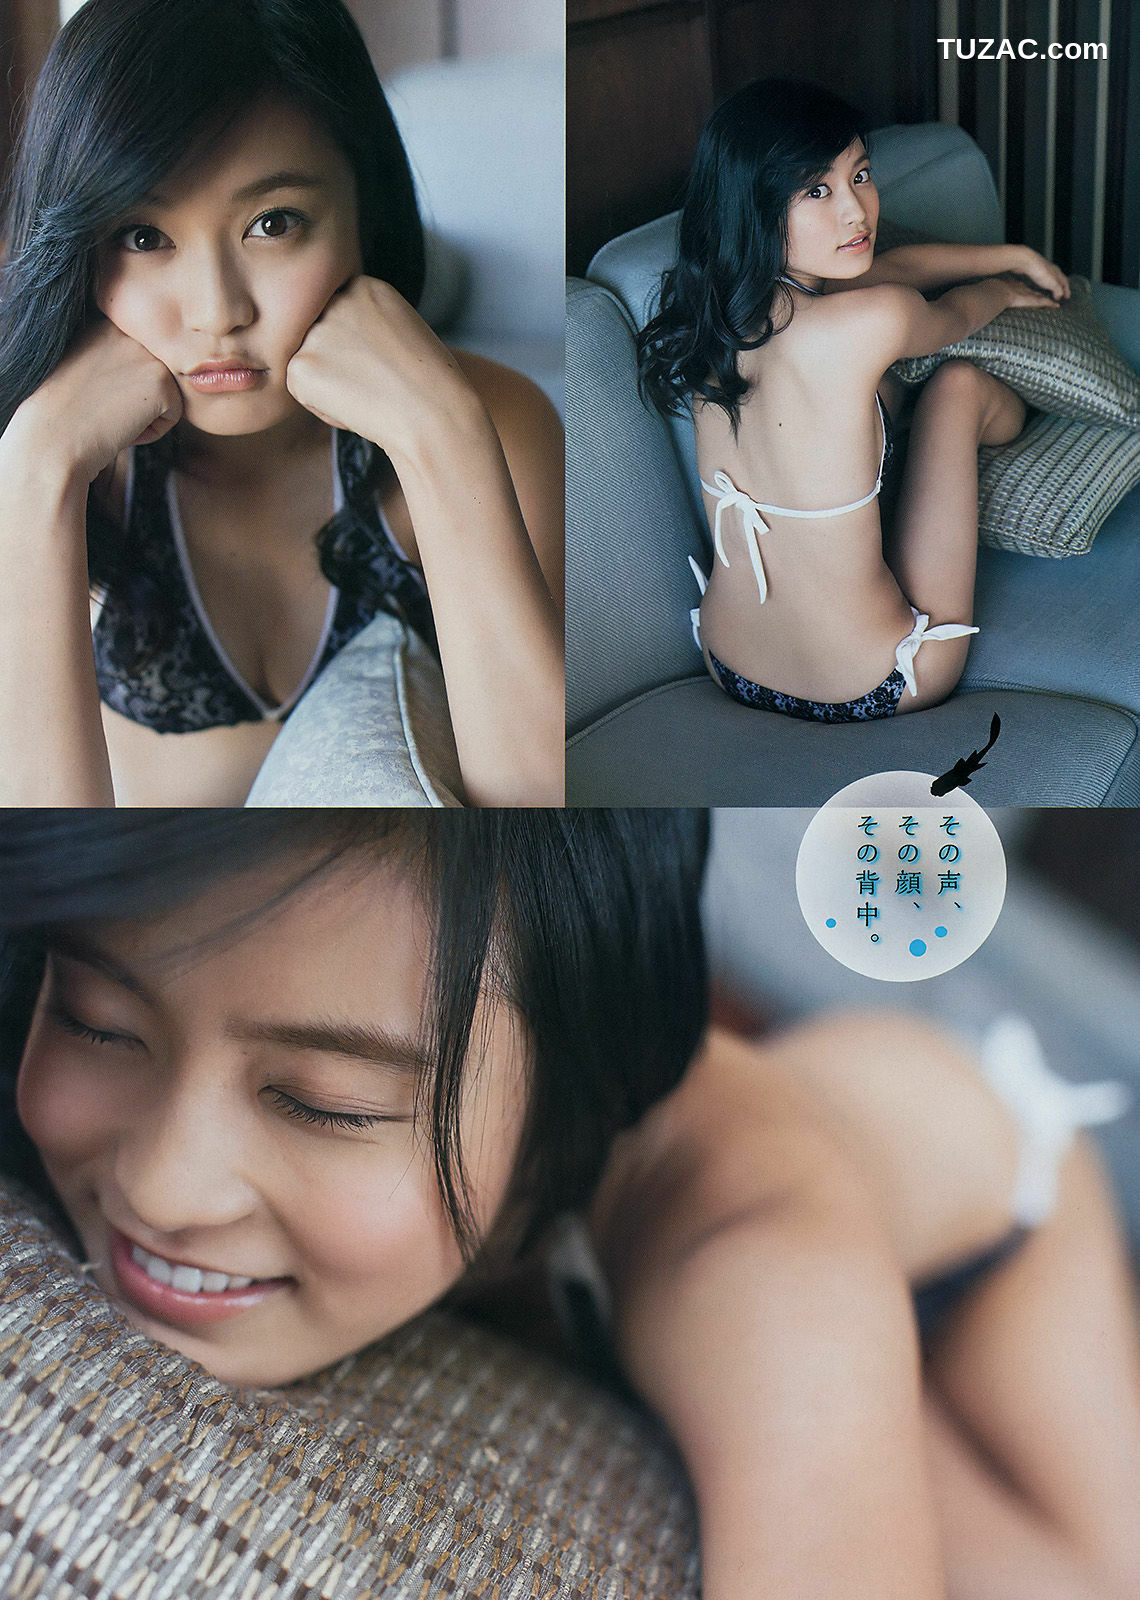 Young Magazine杂志写真_ 小島瑠璃子 2014年No.33 写真杂志[13P]